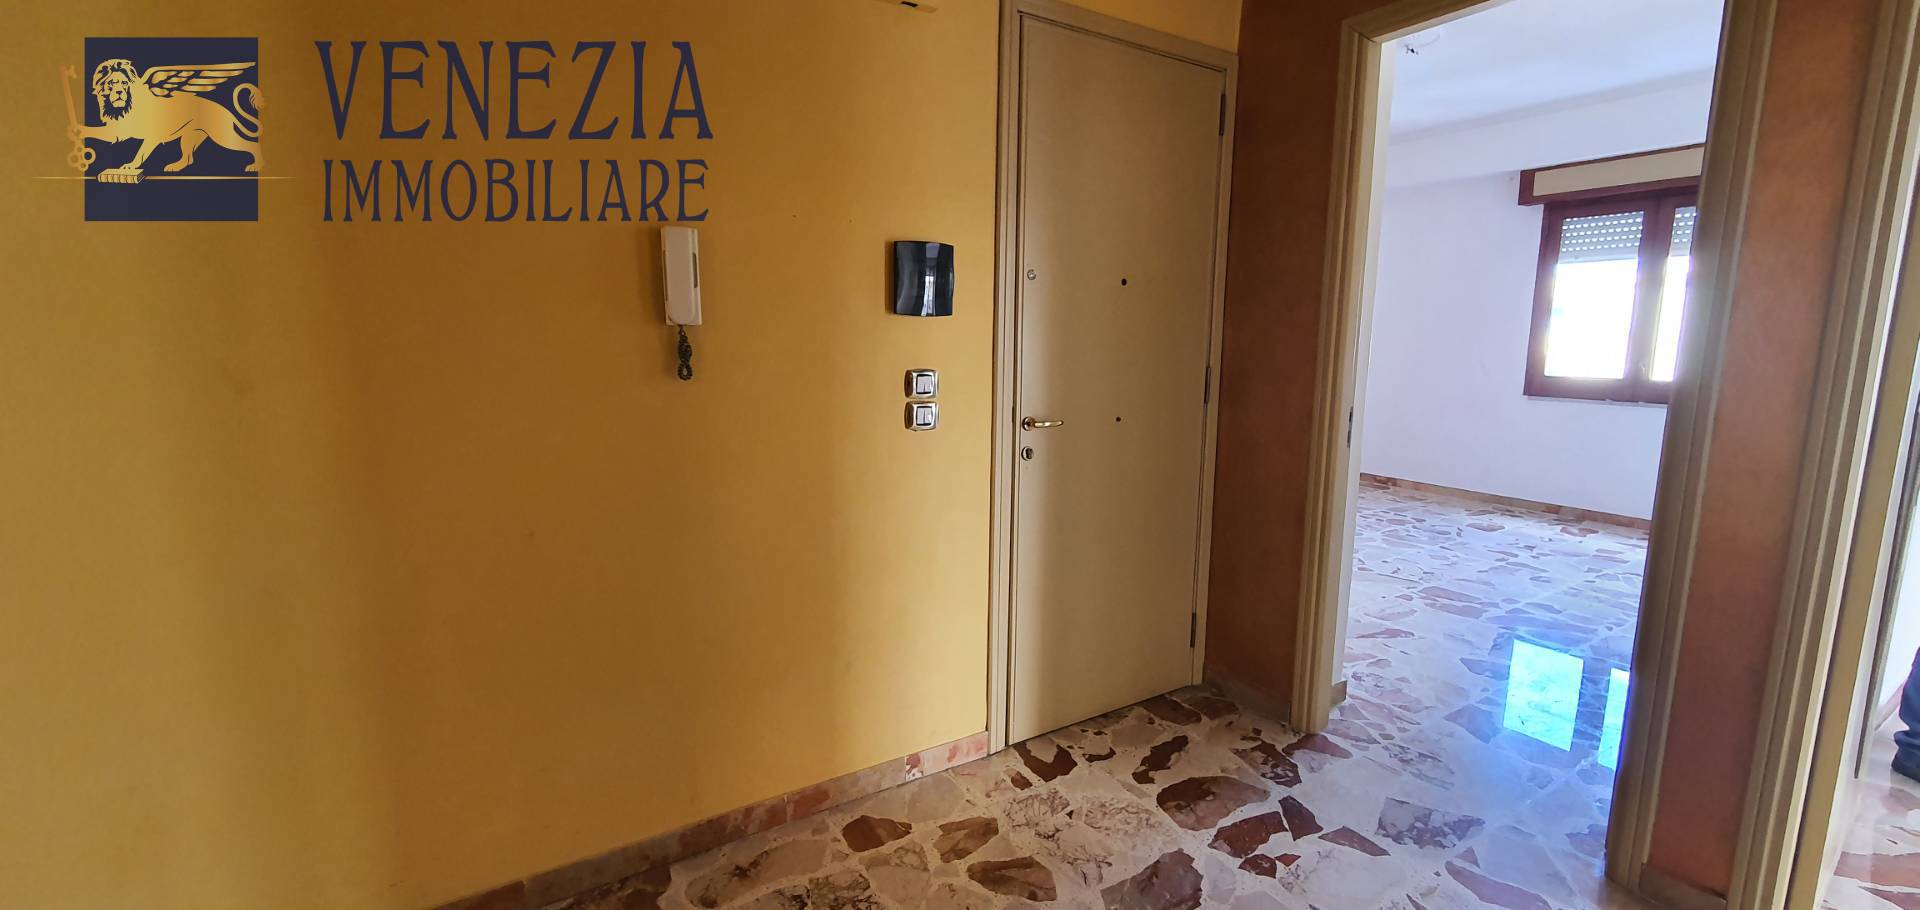 Appartamento in vendita a Sciacca, 4 locali, zona Località: CentroStorico, prezzo € 80.000 | PortaleAgenzieImmobiliari.it